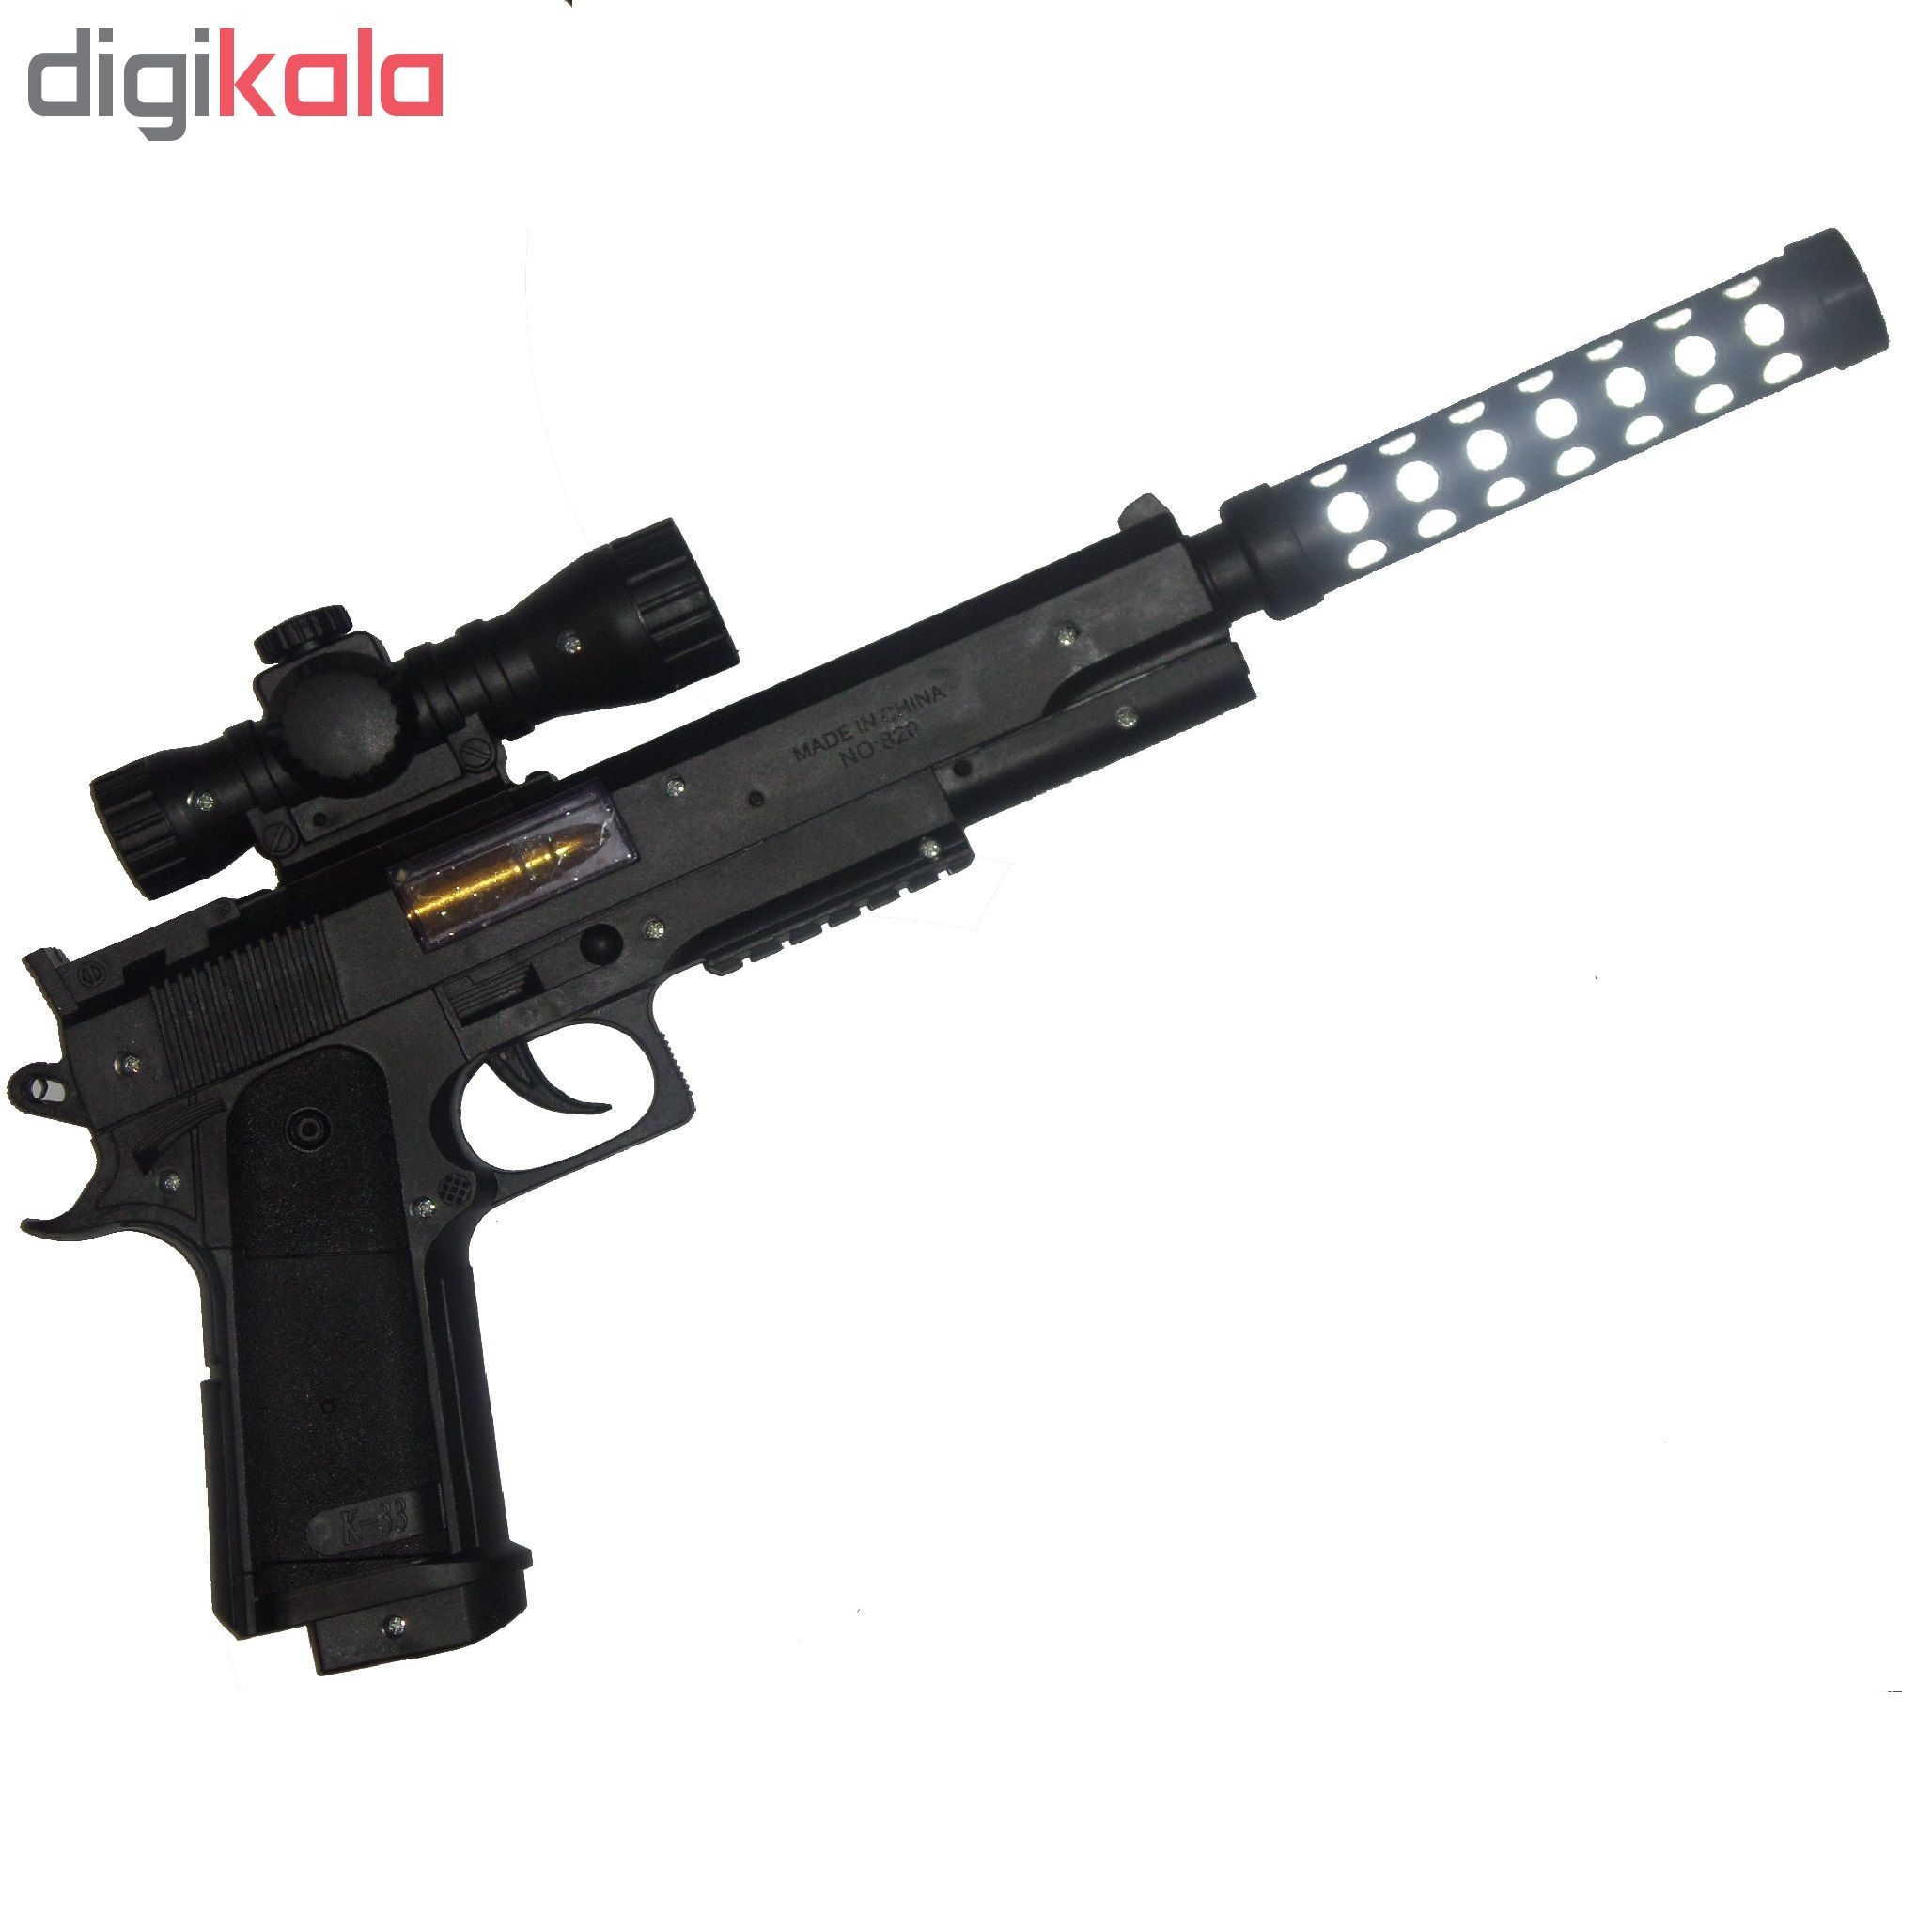 تفنگ بازی مدل mute hand gun کد a14